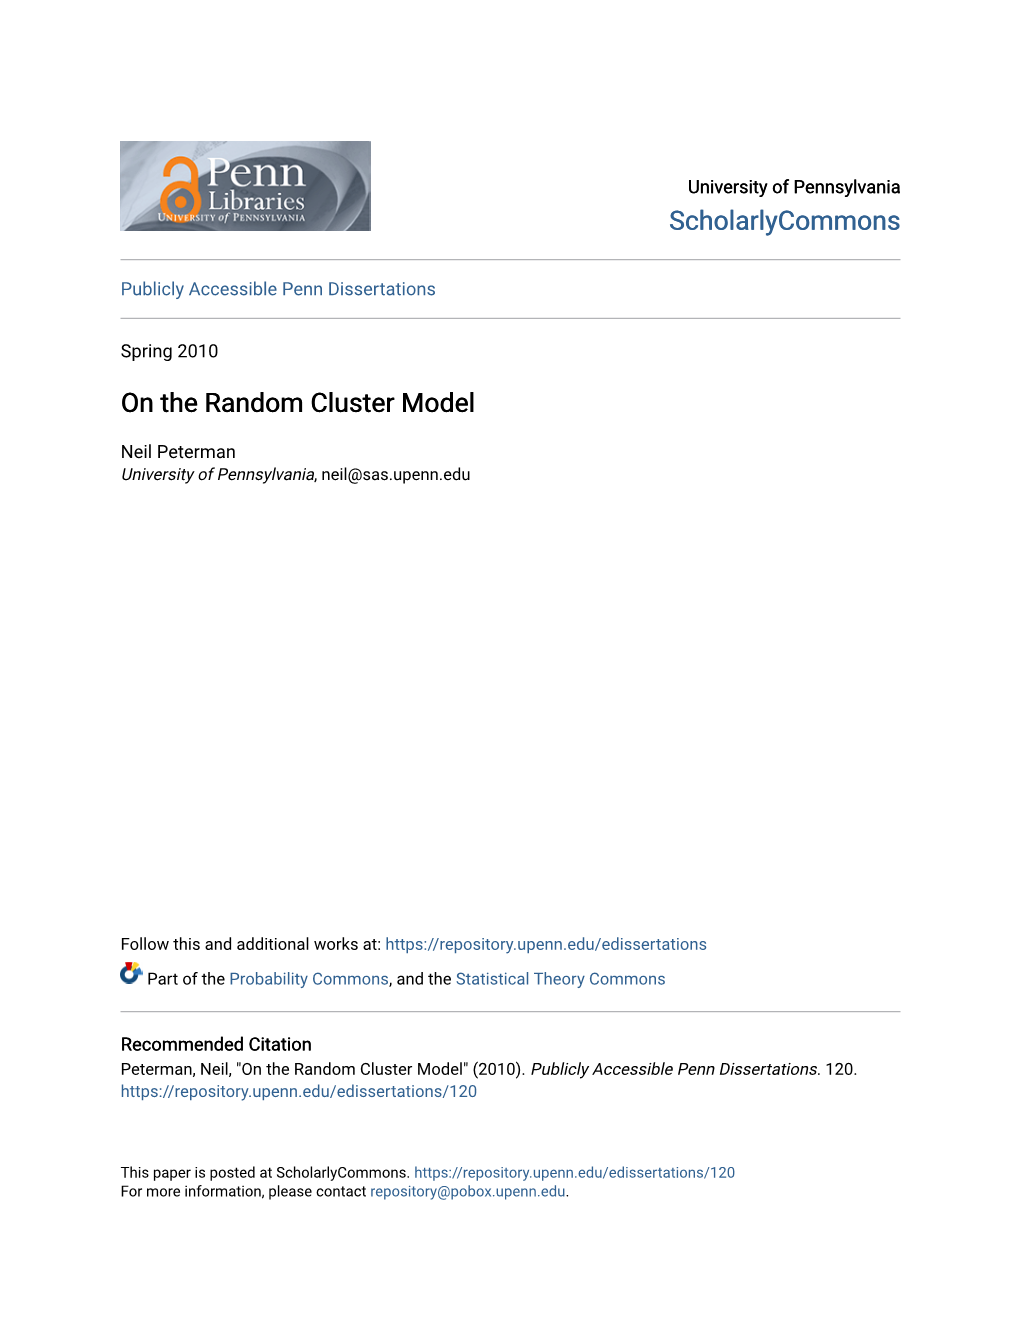 On the Random Cluster Model